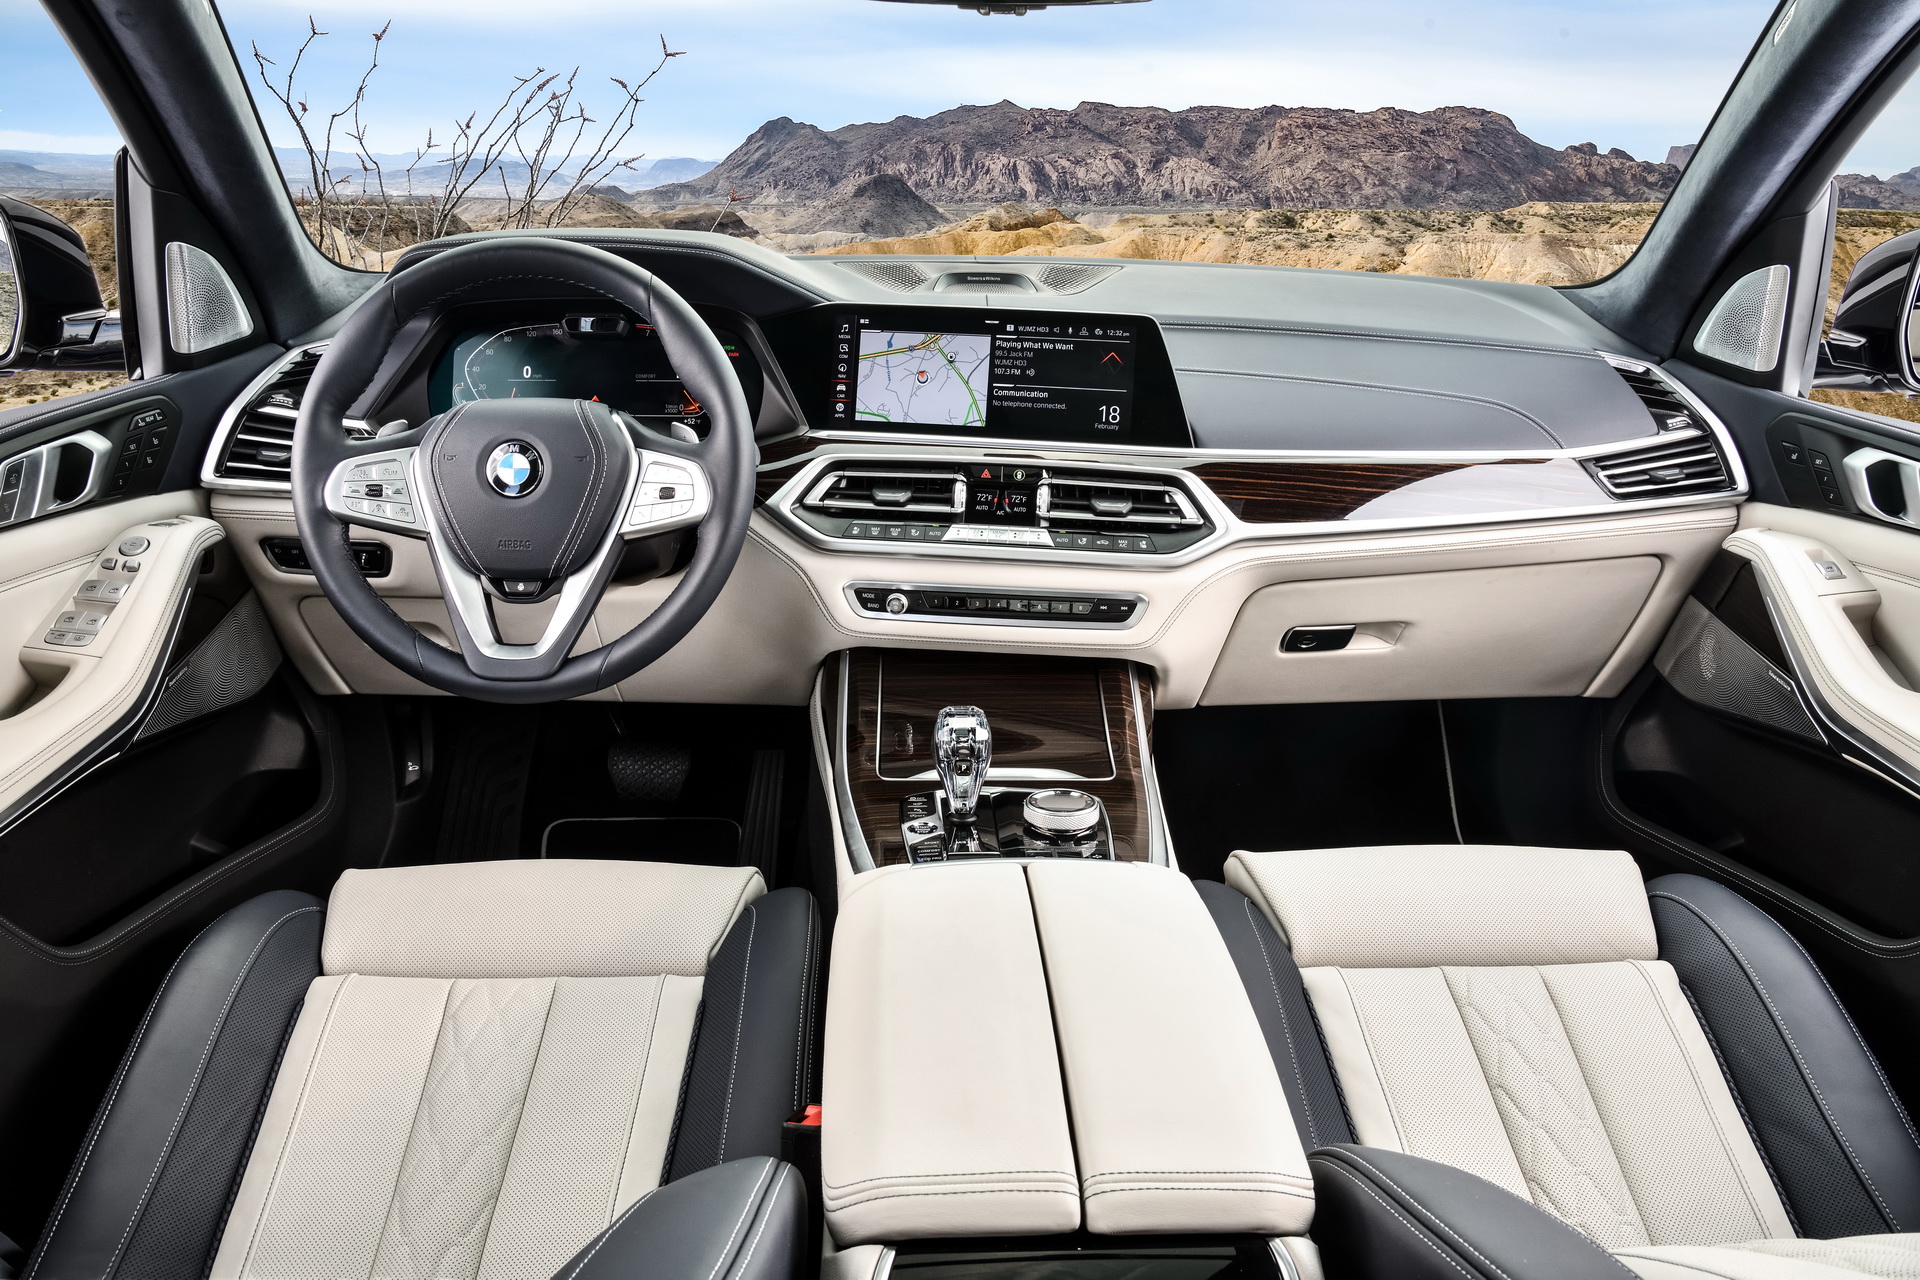 So kè BMW X7 vs Mercedes GLS cùng 3 mẫu SUV full-size hấp dẫn giới nhà giàu - Ảnh 9.